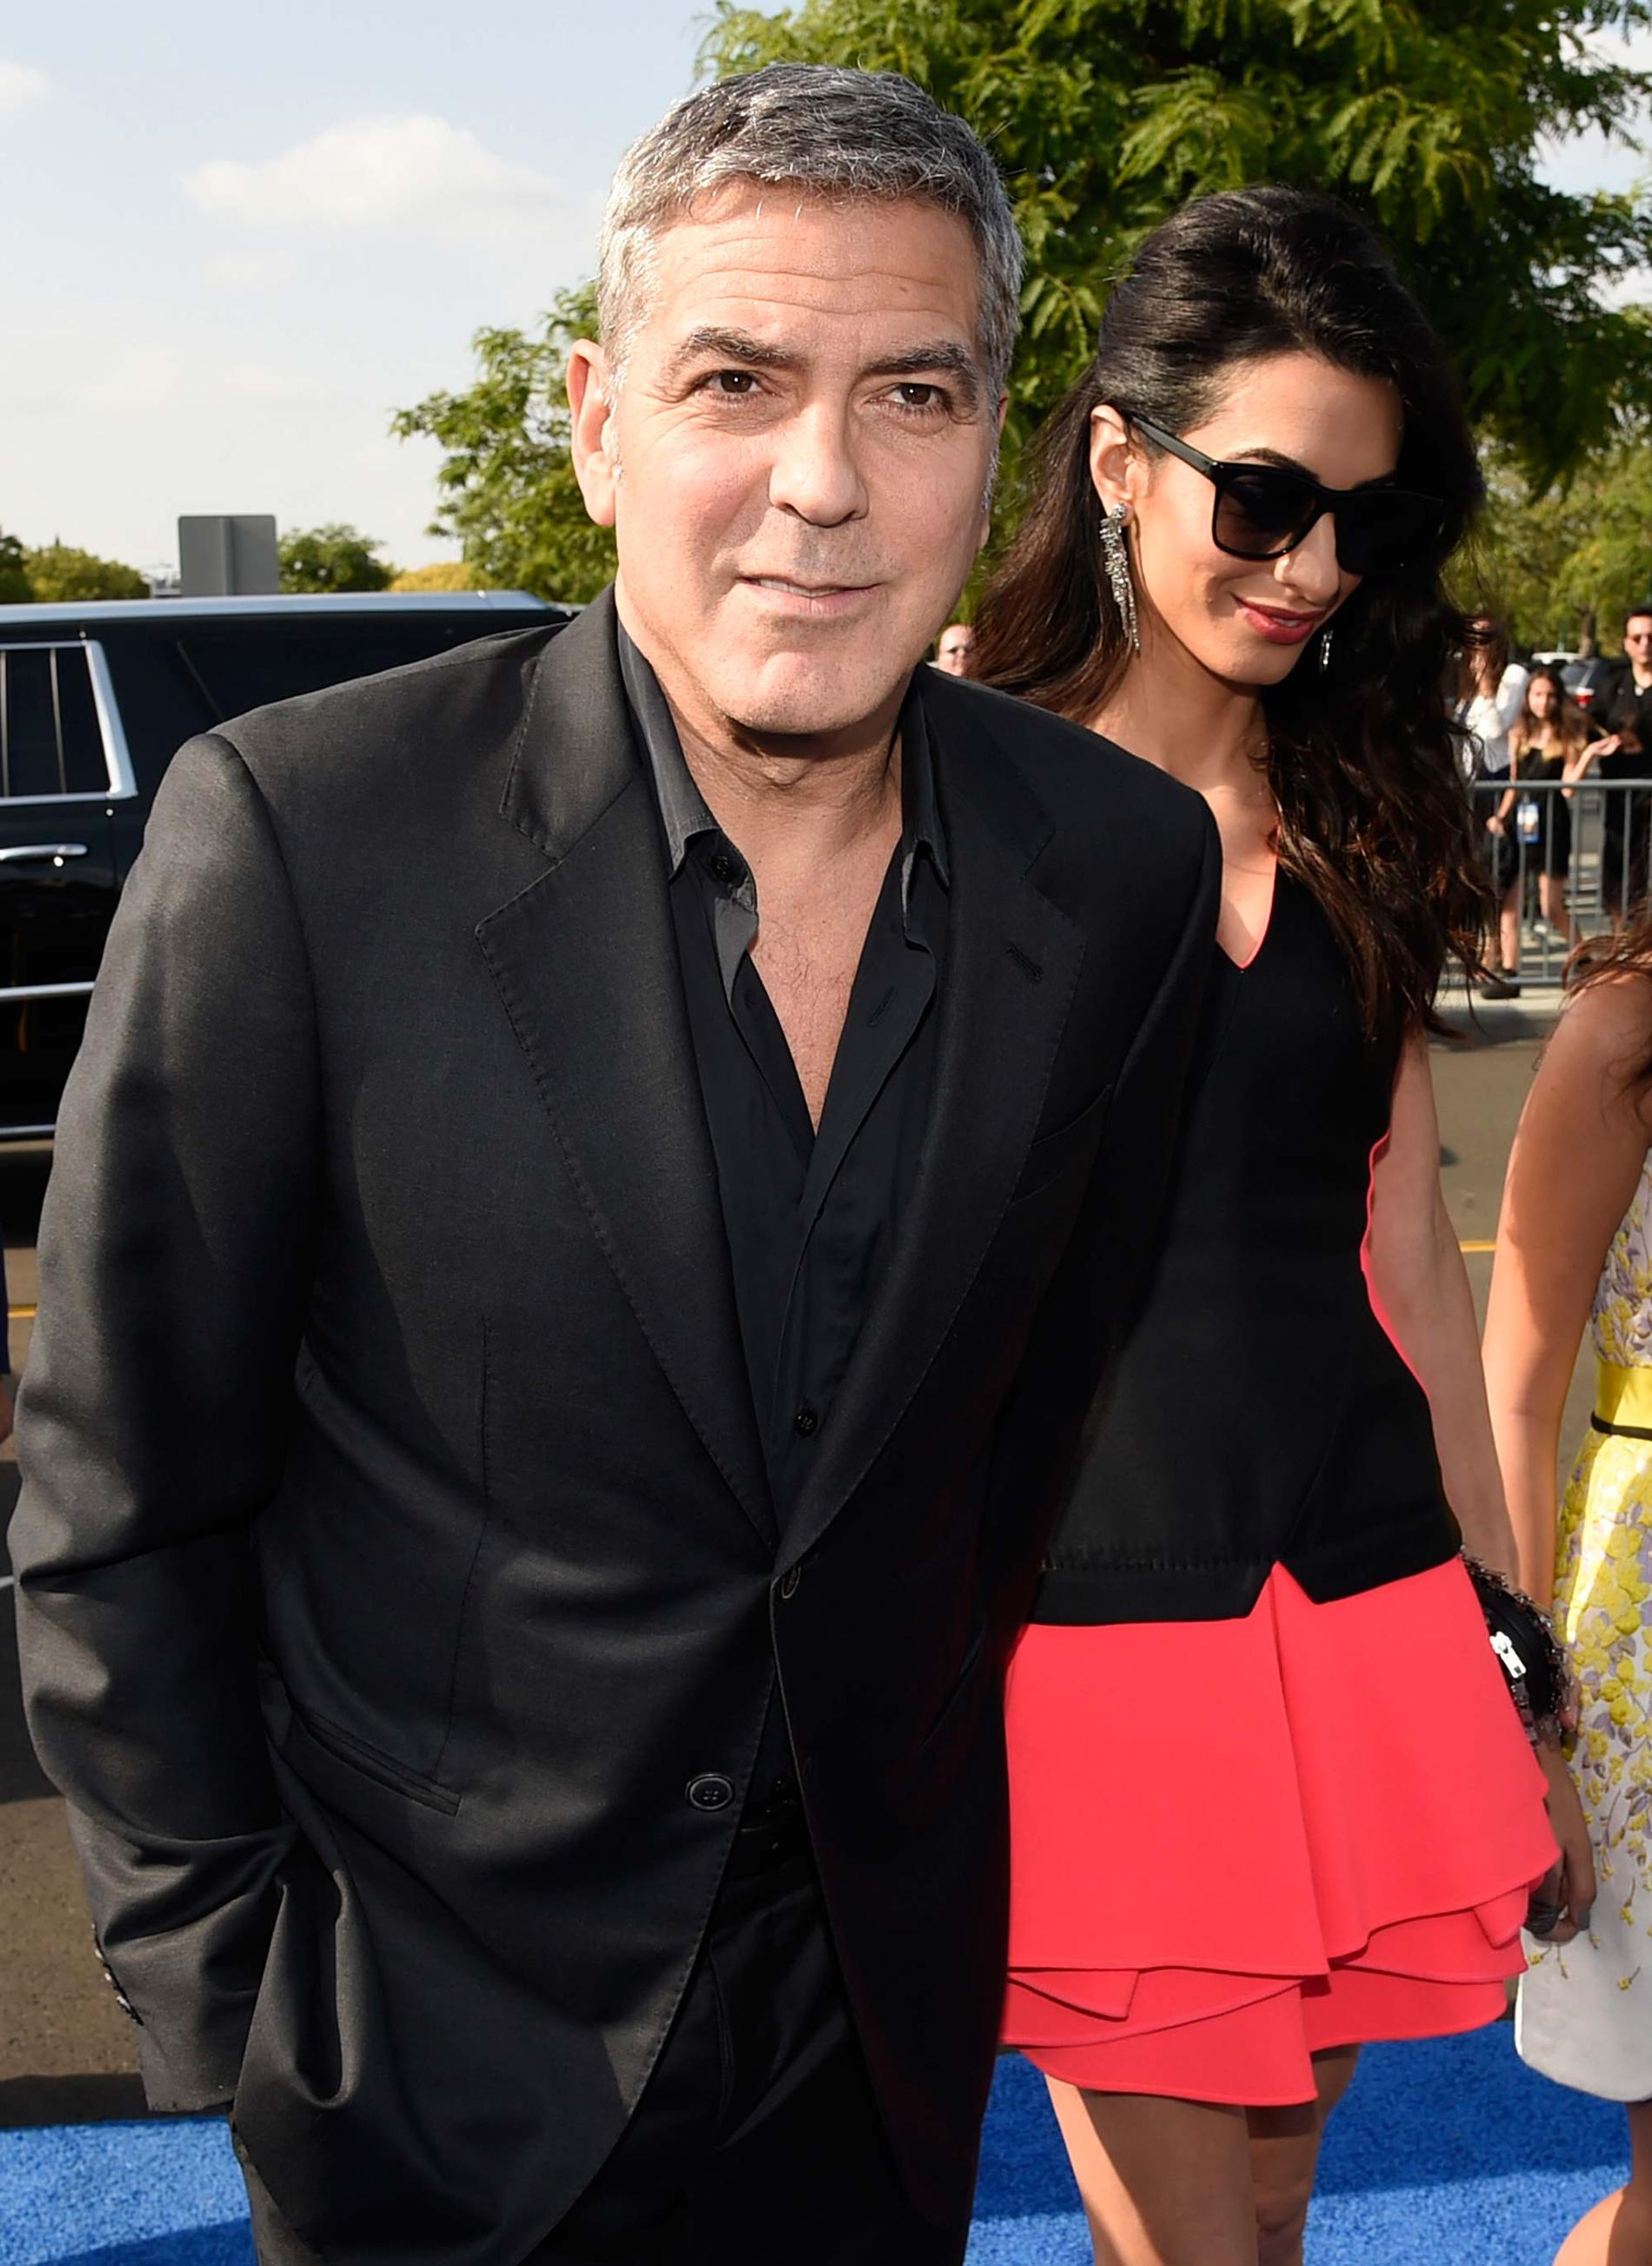 George och Amal Clooney.